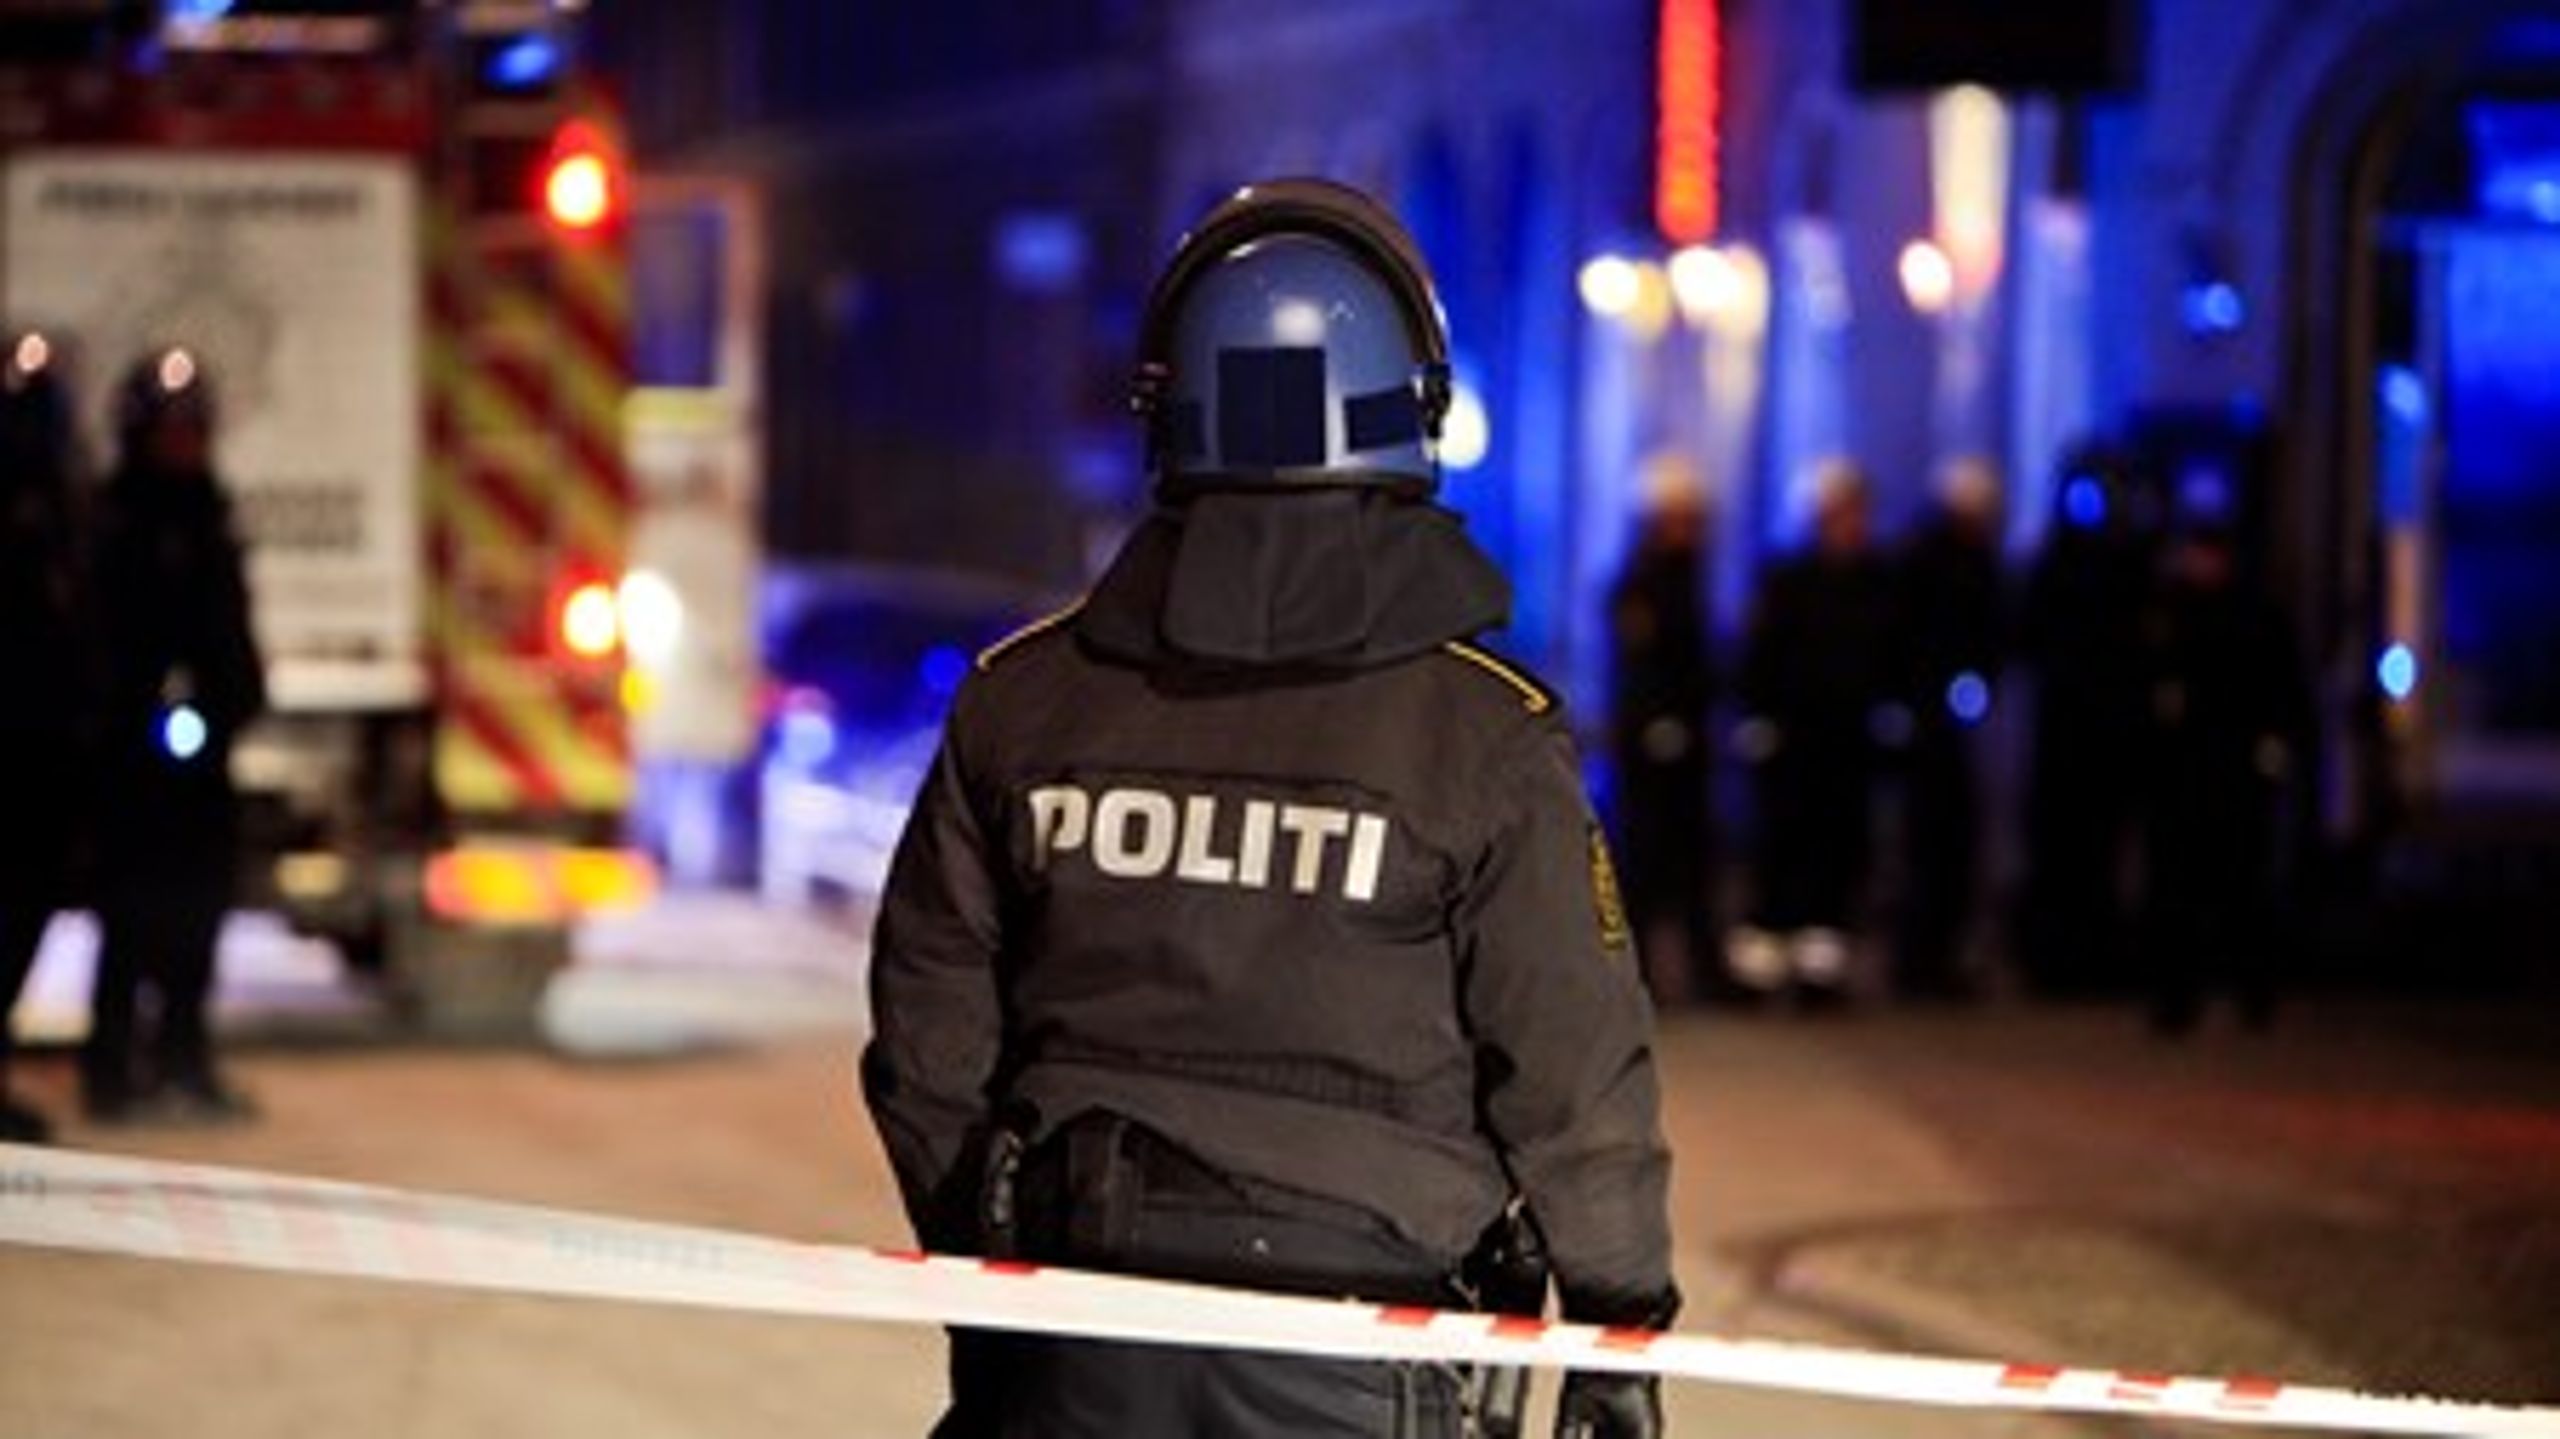 De hidtidige terroranslag&nbsp;mod Danmark er blevet forhindret af en kombination af godt efterretningsarbejde og terroristernes inkompetence. Men den islamistiske trussel mod Danmark er ikke mindre&nbsp;end i Frankrig.&nbsp;<br>